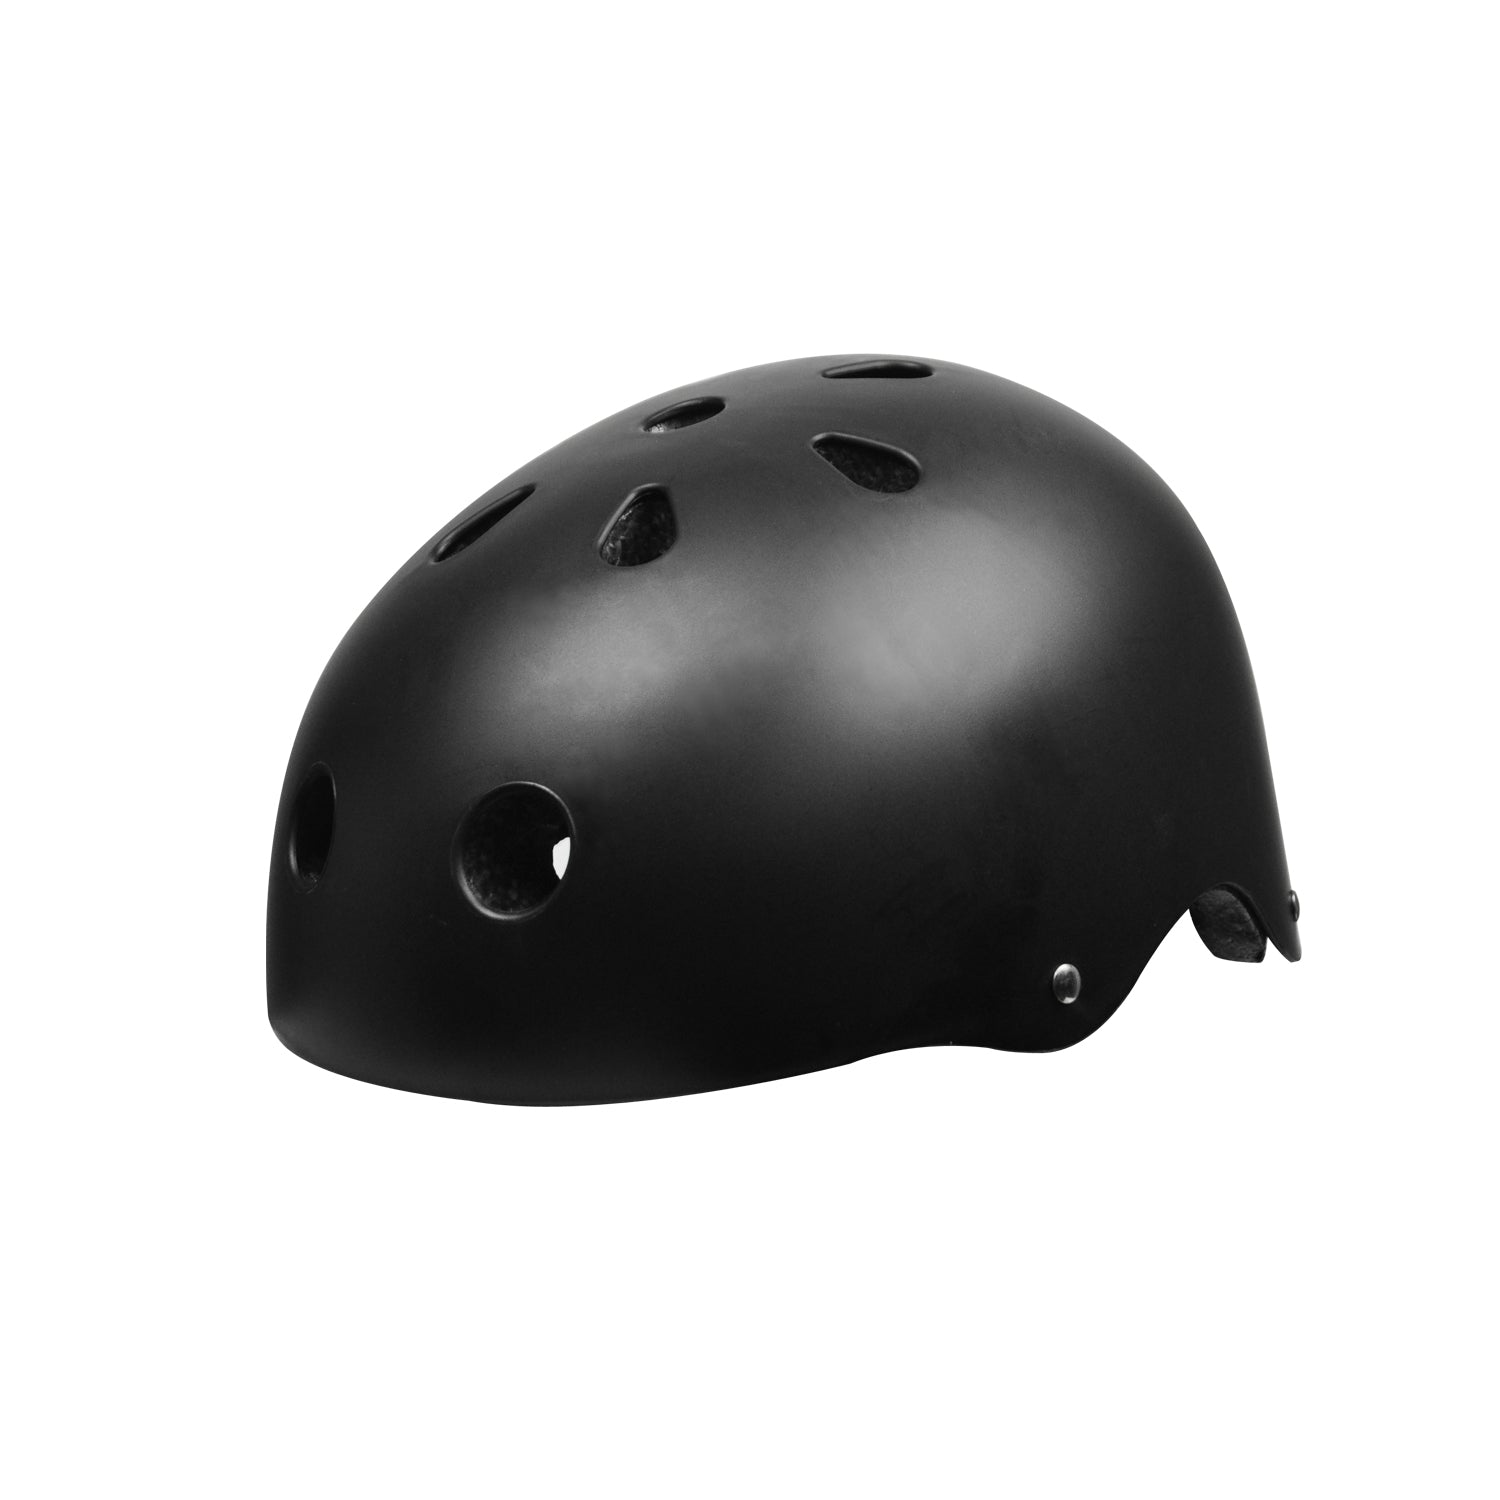 Apachie Essential Street Helmet